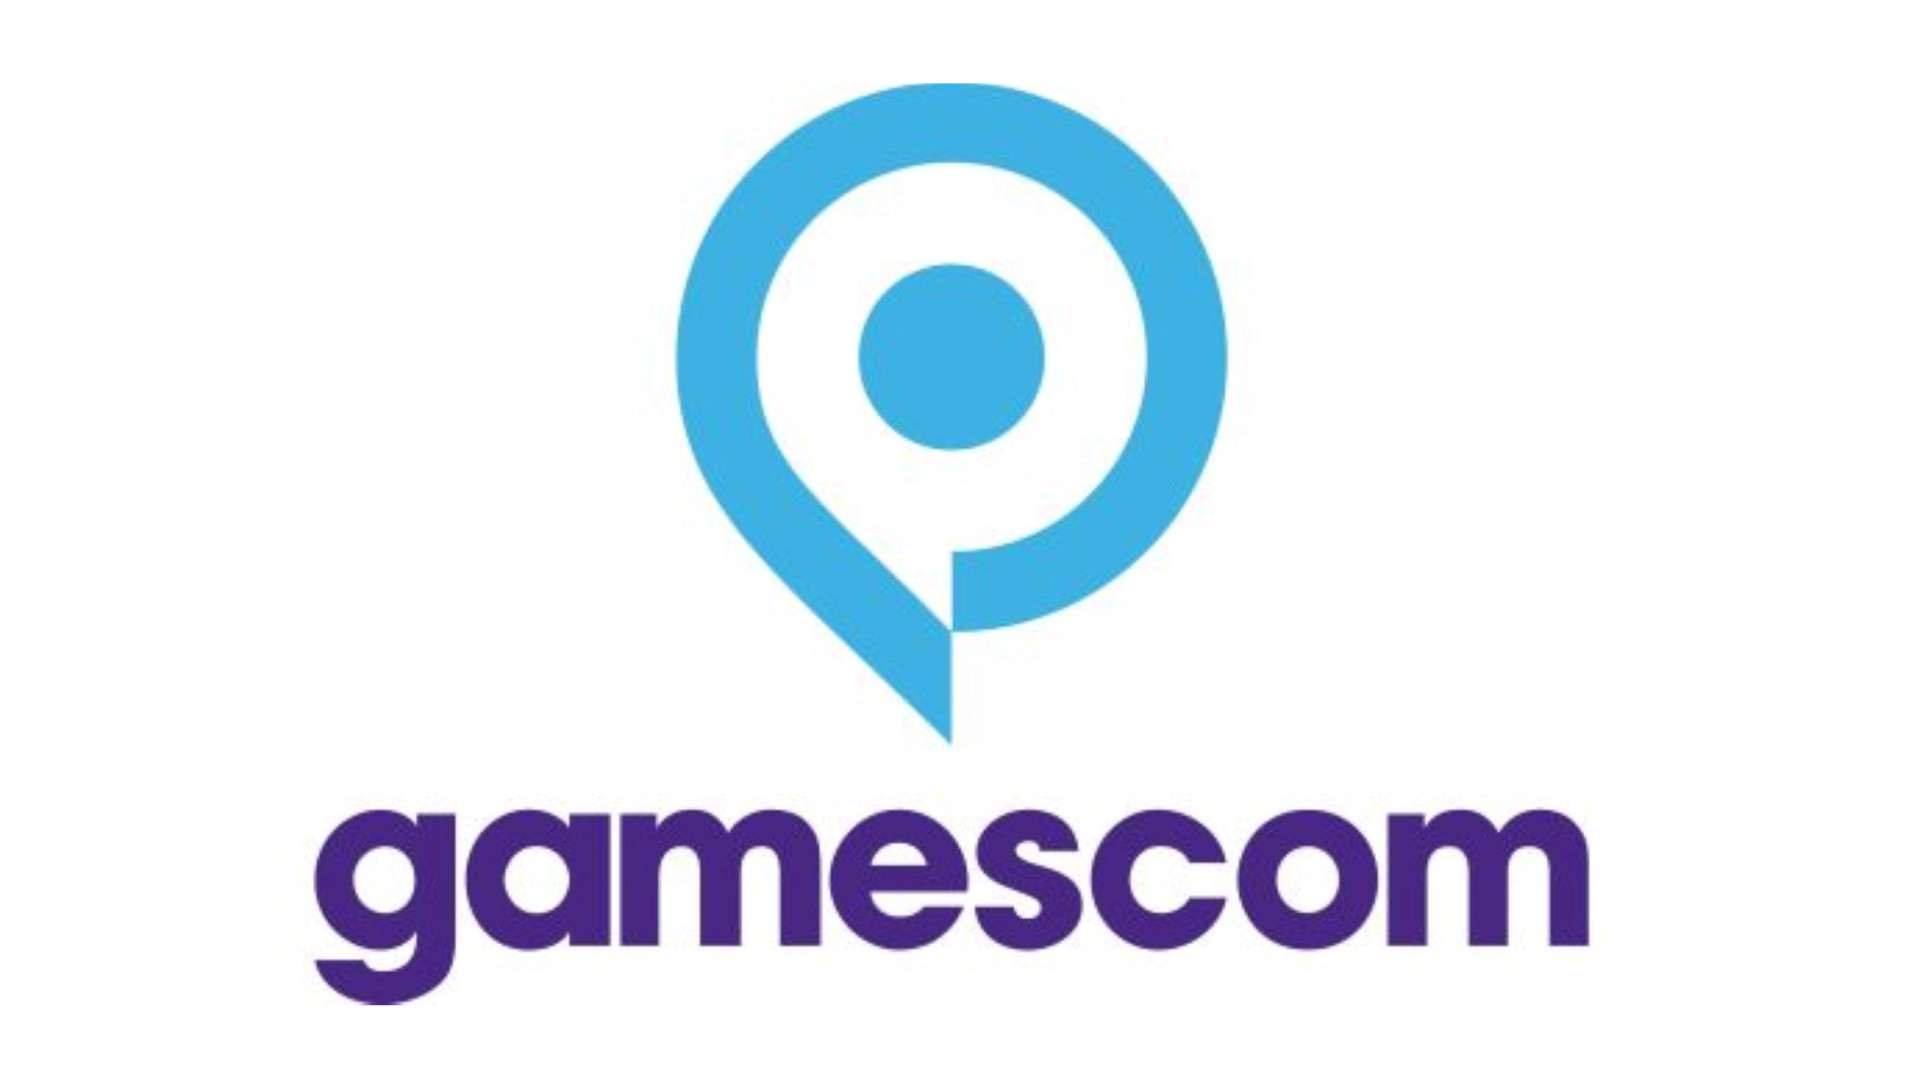 Gamescom 2021 Schedule